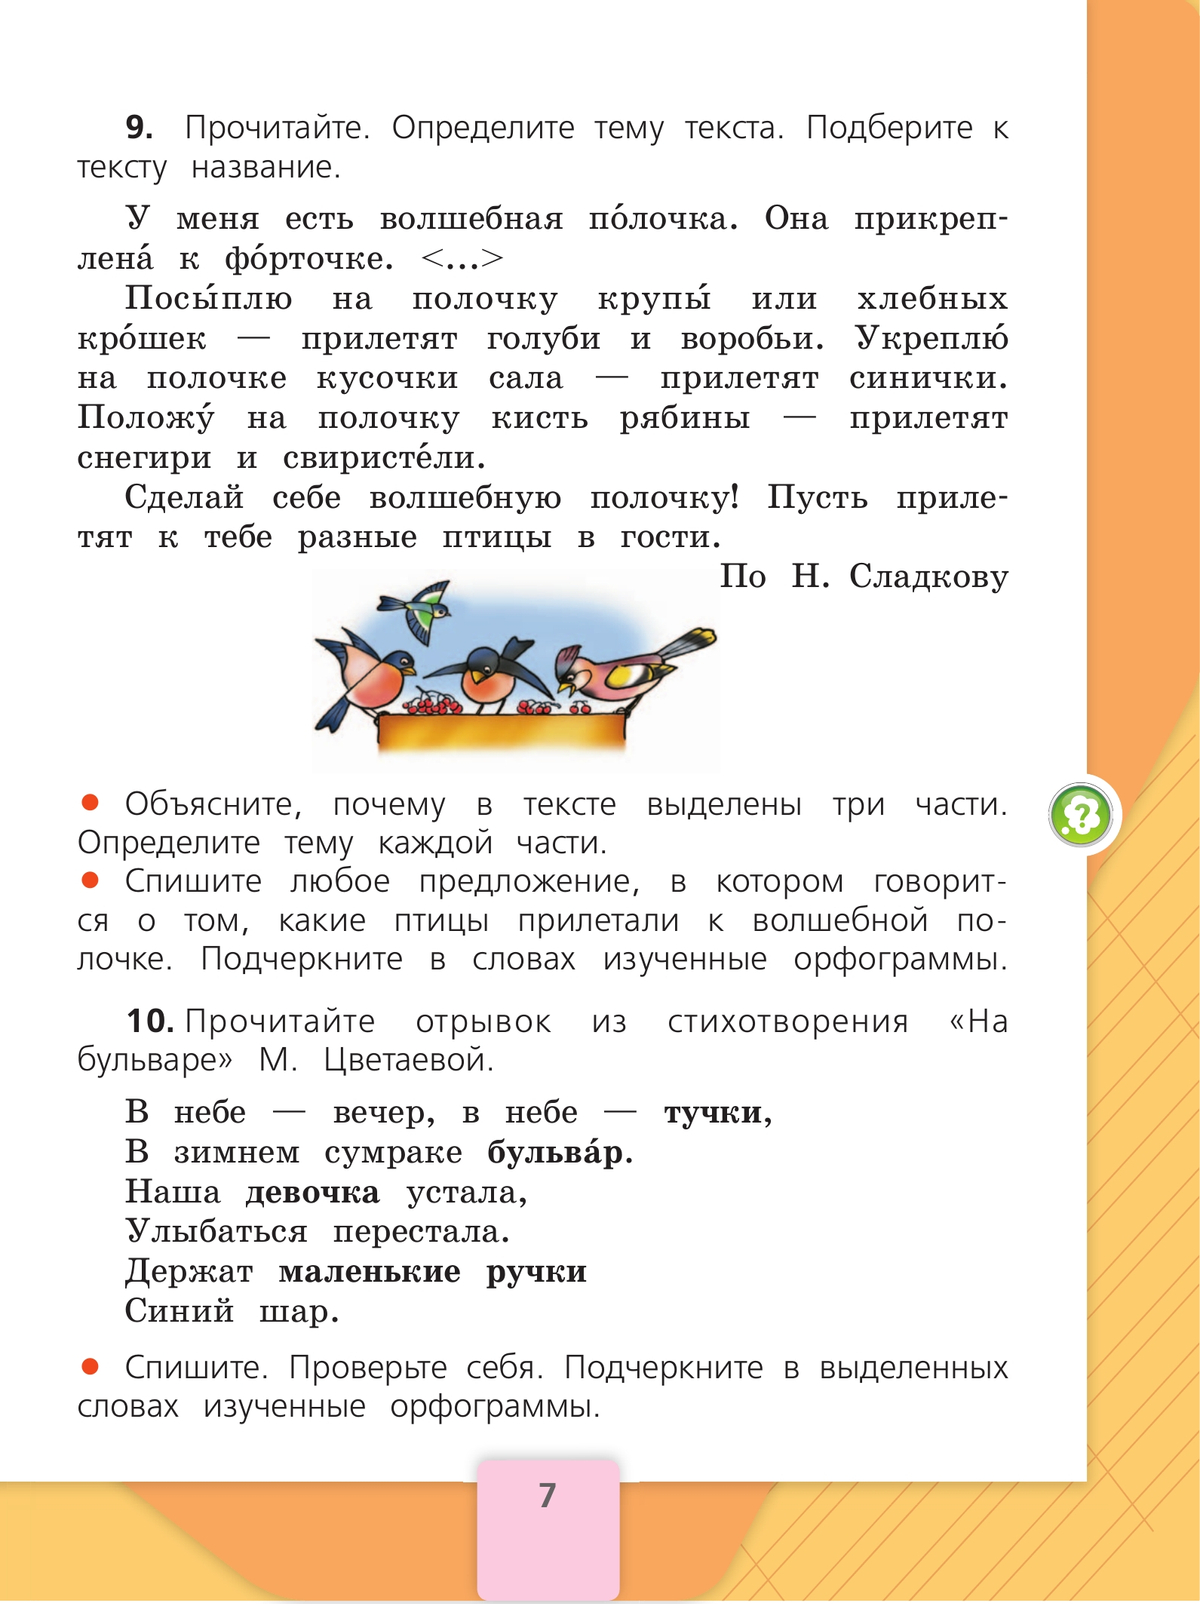 Русский язык. 2 класс. Учебник. В 2 ч. Часть 2 10